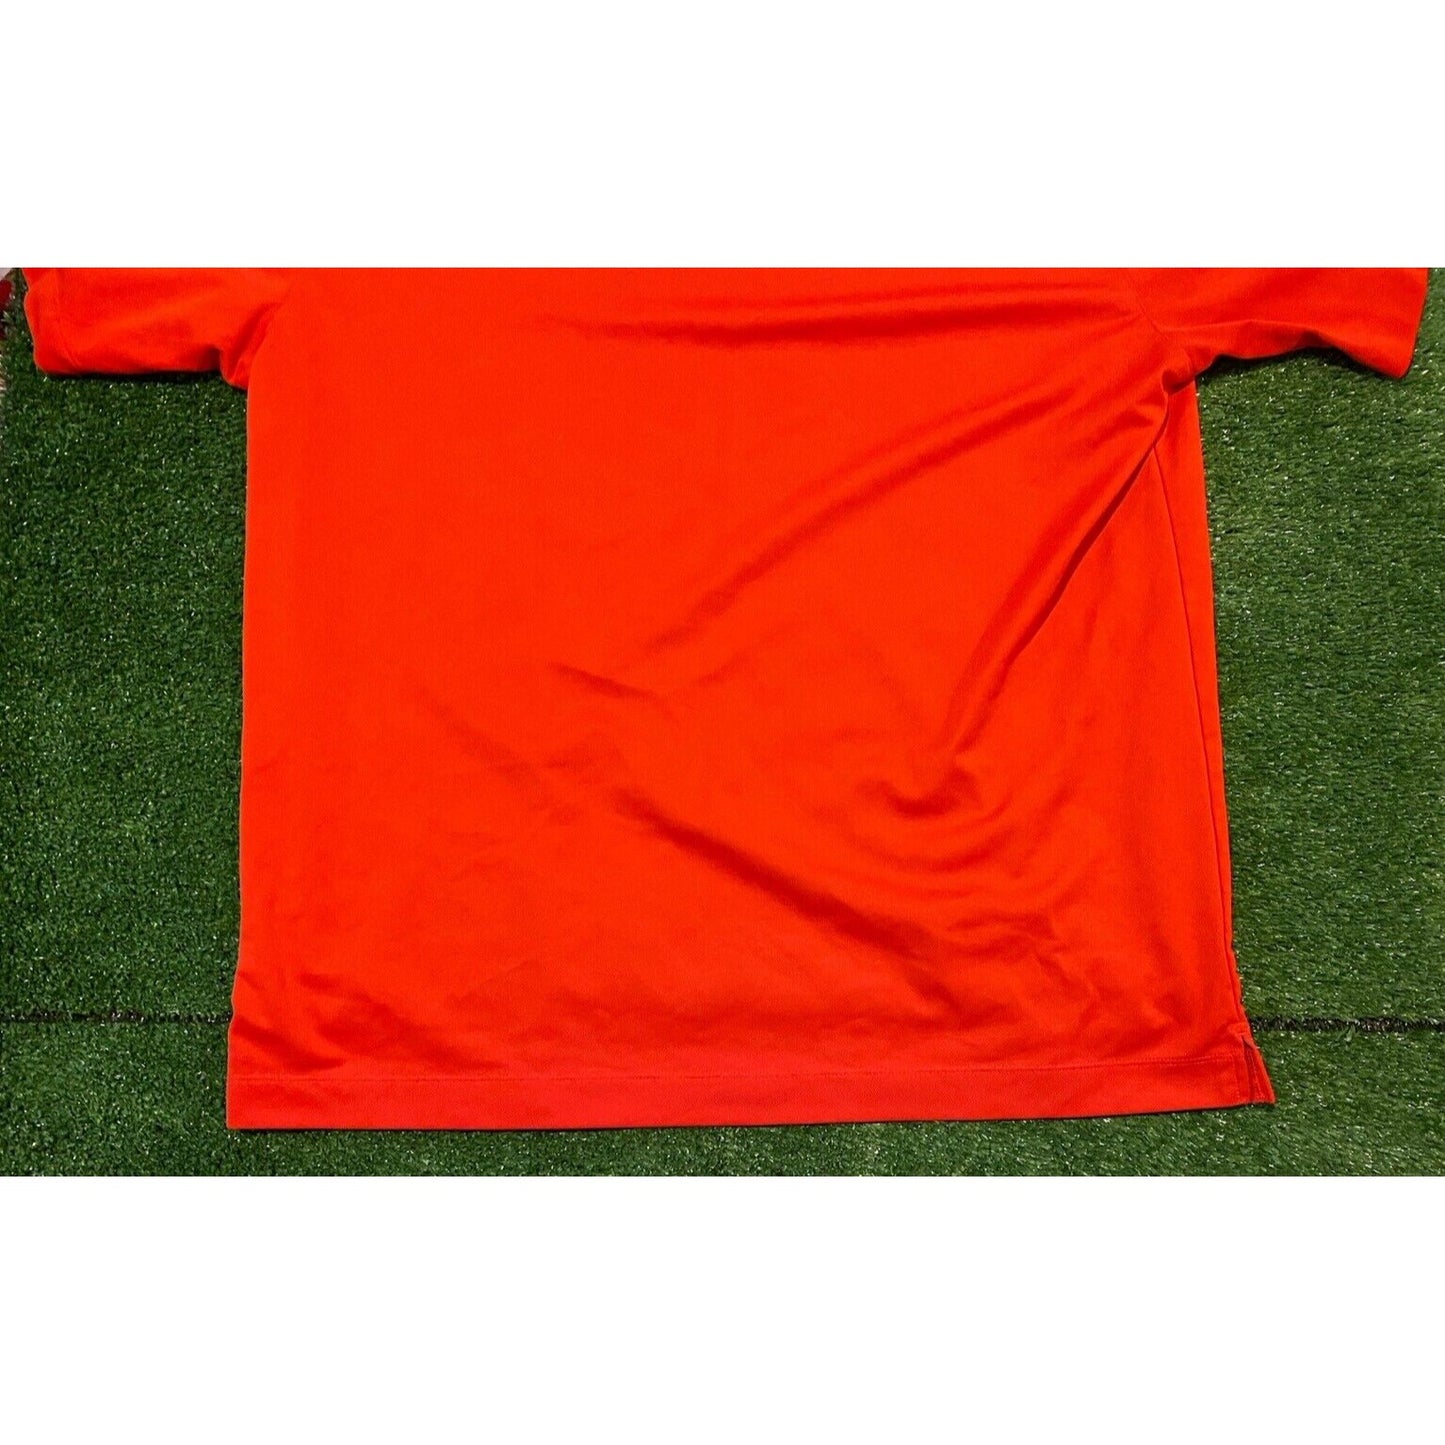 Nike Arkansas Razorbacks shirt extra large golf polo red adult mens dri fit